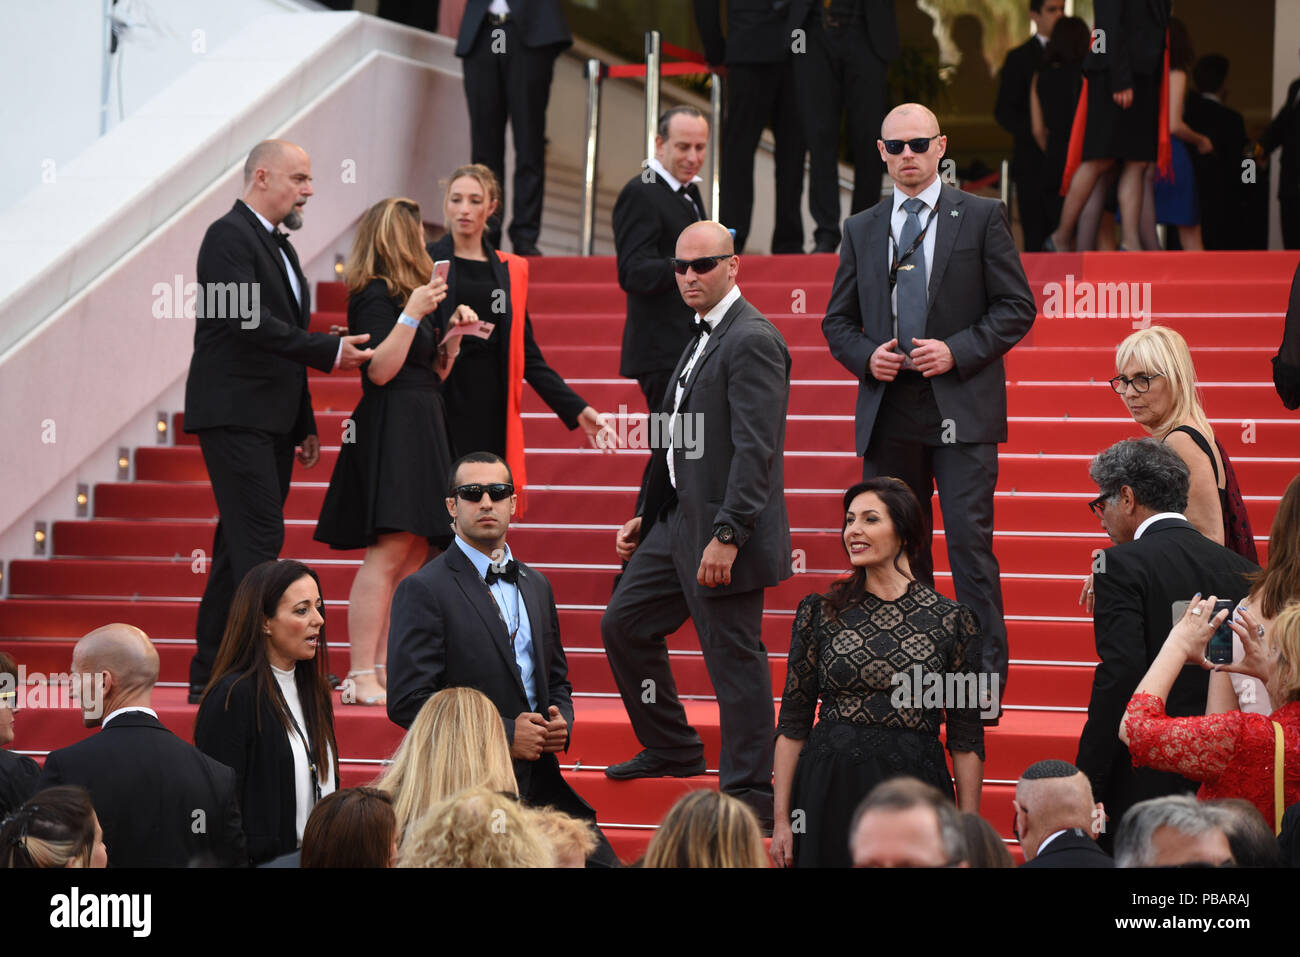 16 maggio 2016 - Cannes, Francia: Miri Regev frequentare il 'amante' premiere durante la 69a Cannes film festival. La ministre israelienne Miri Regev, entouree de gardes du corps, Lors du 69eme Festival de Cannes. *** La Francia / NESSUNA VENDITA A MEDIA FRANCESI *** Foto Stock